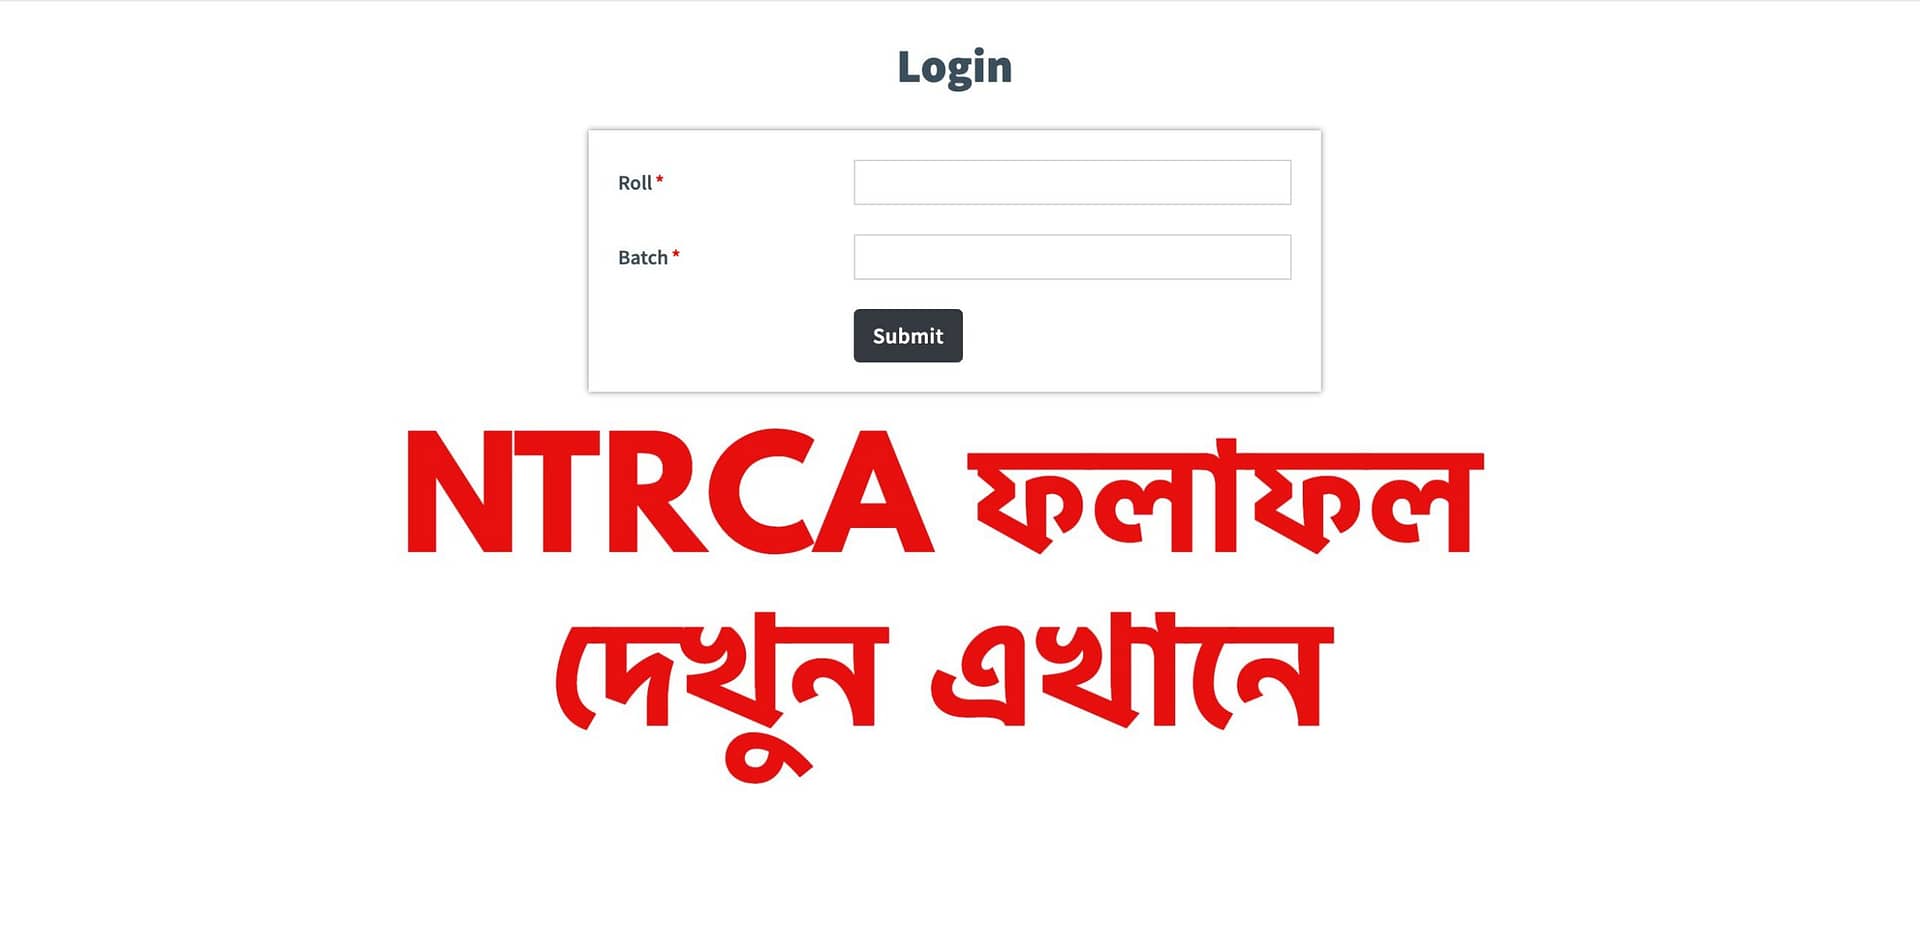 ngiresult.teletalk.com bd Ntrca Result 2023 Check ntrca.gov.bd